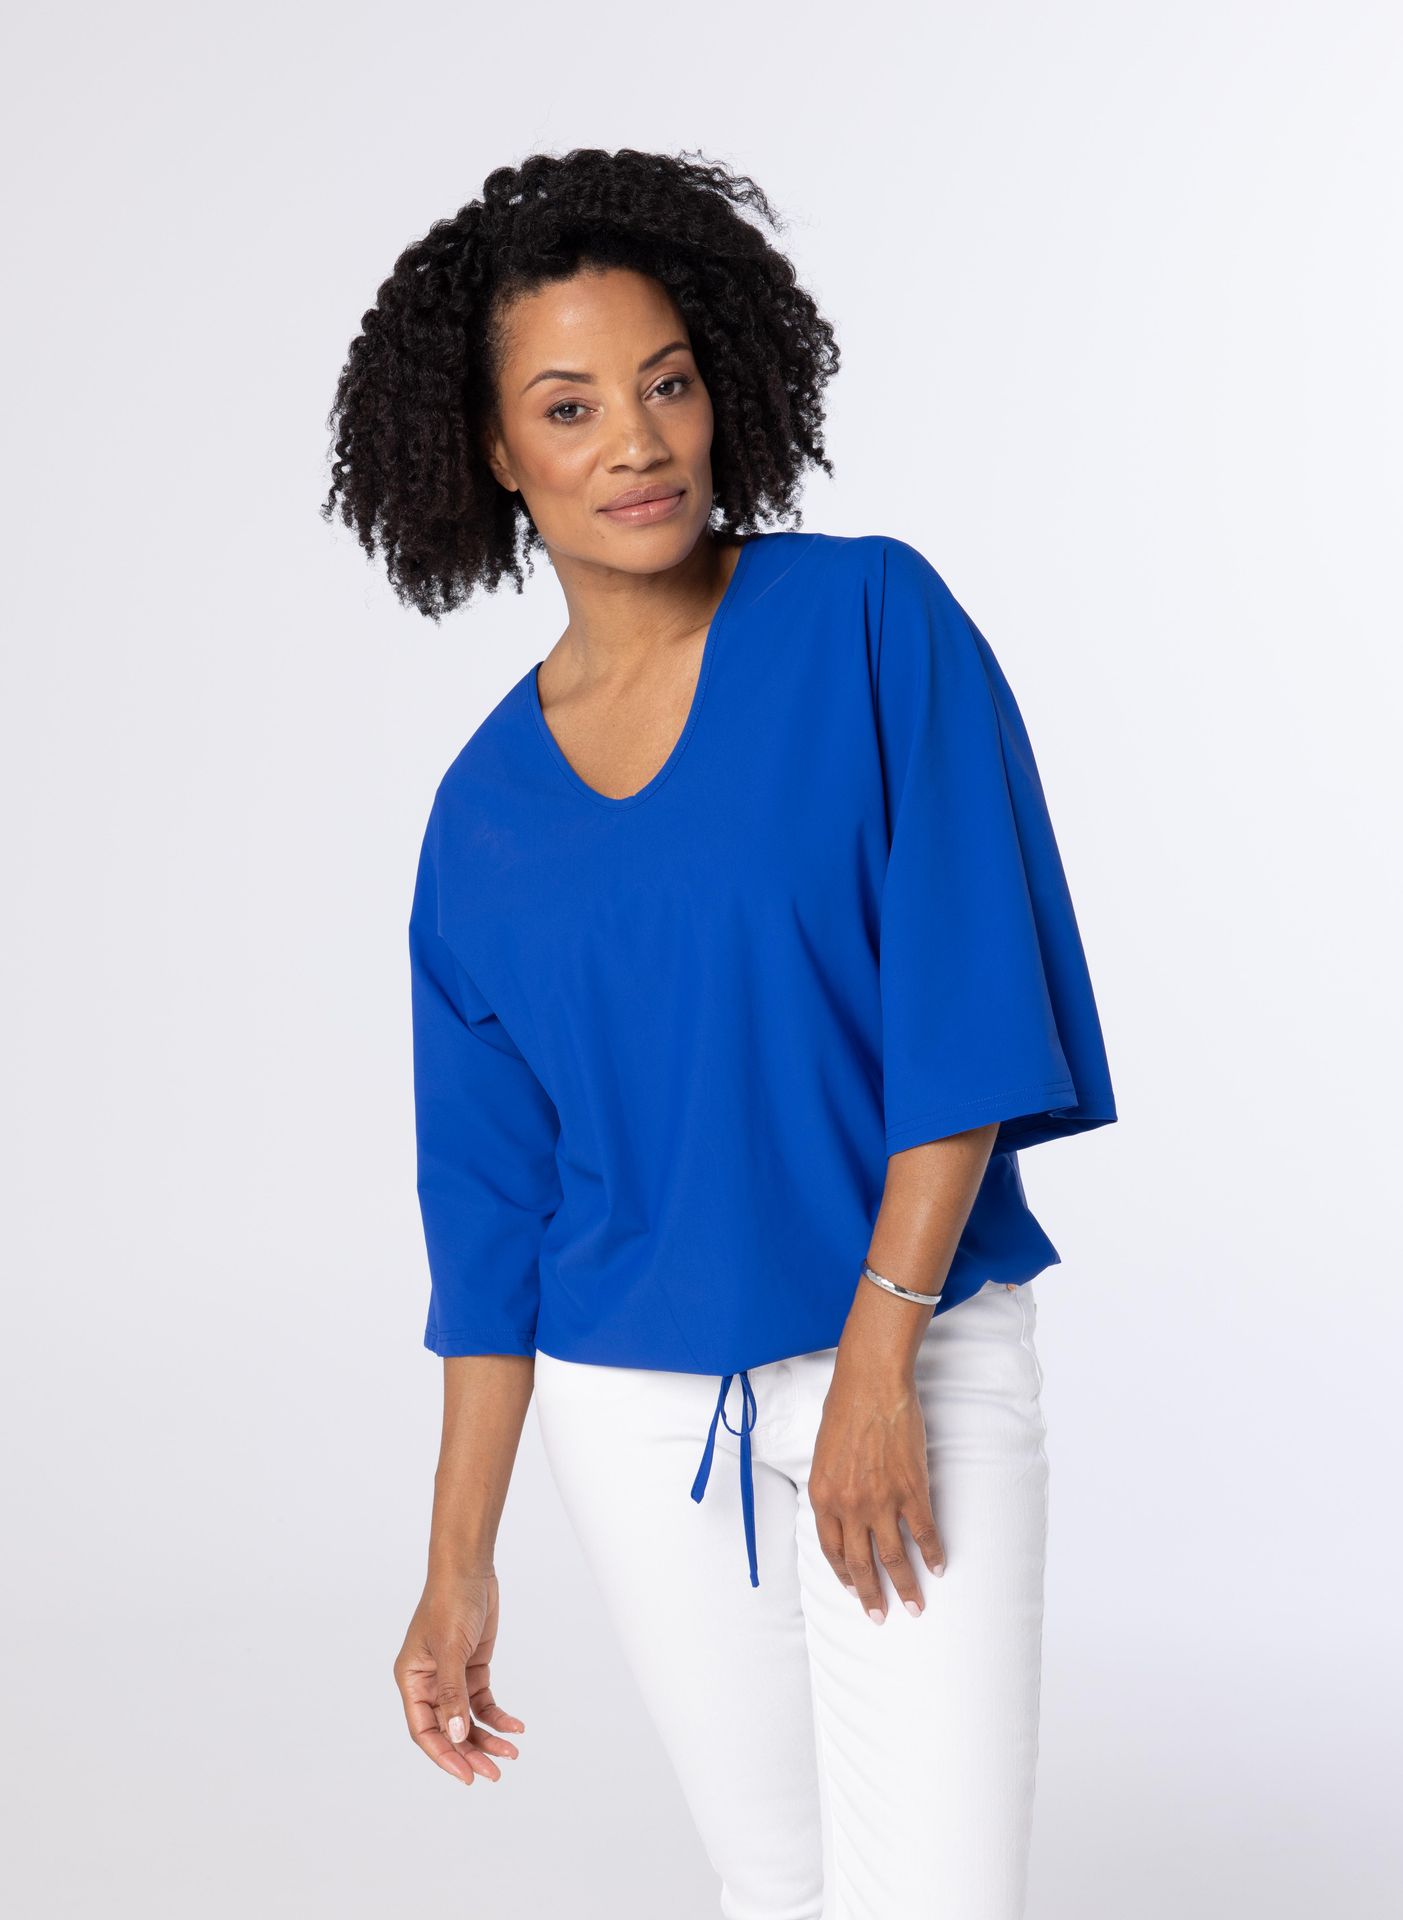 Norah Blauw shirt van travelstof cobalt 213469-468